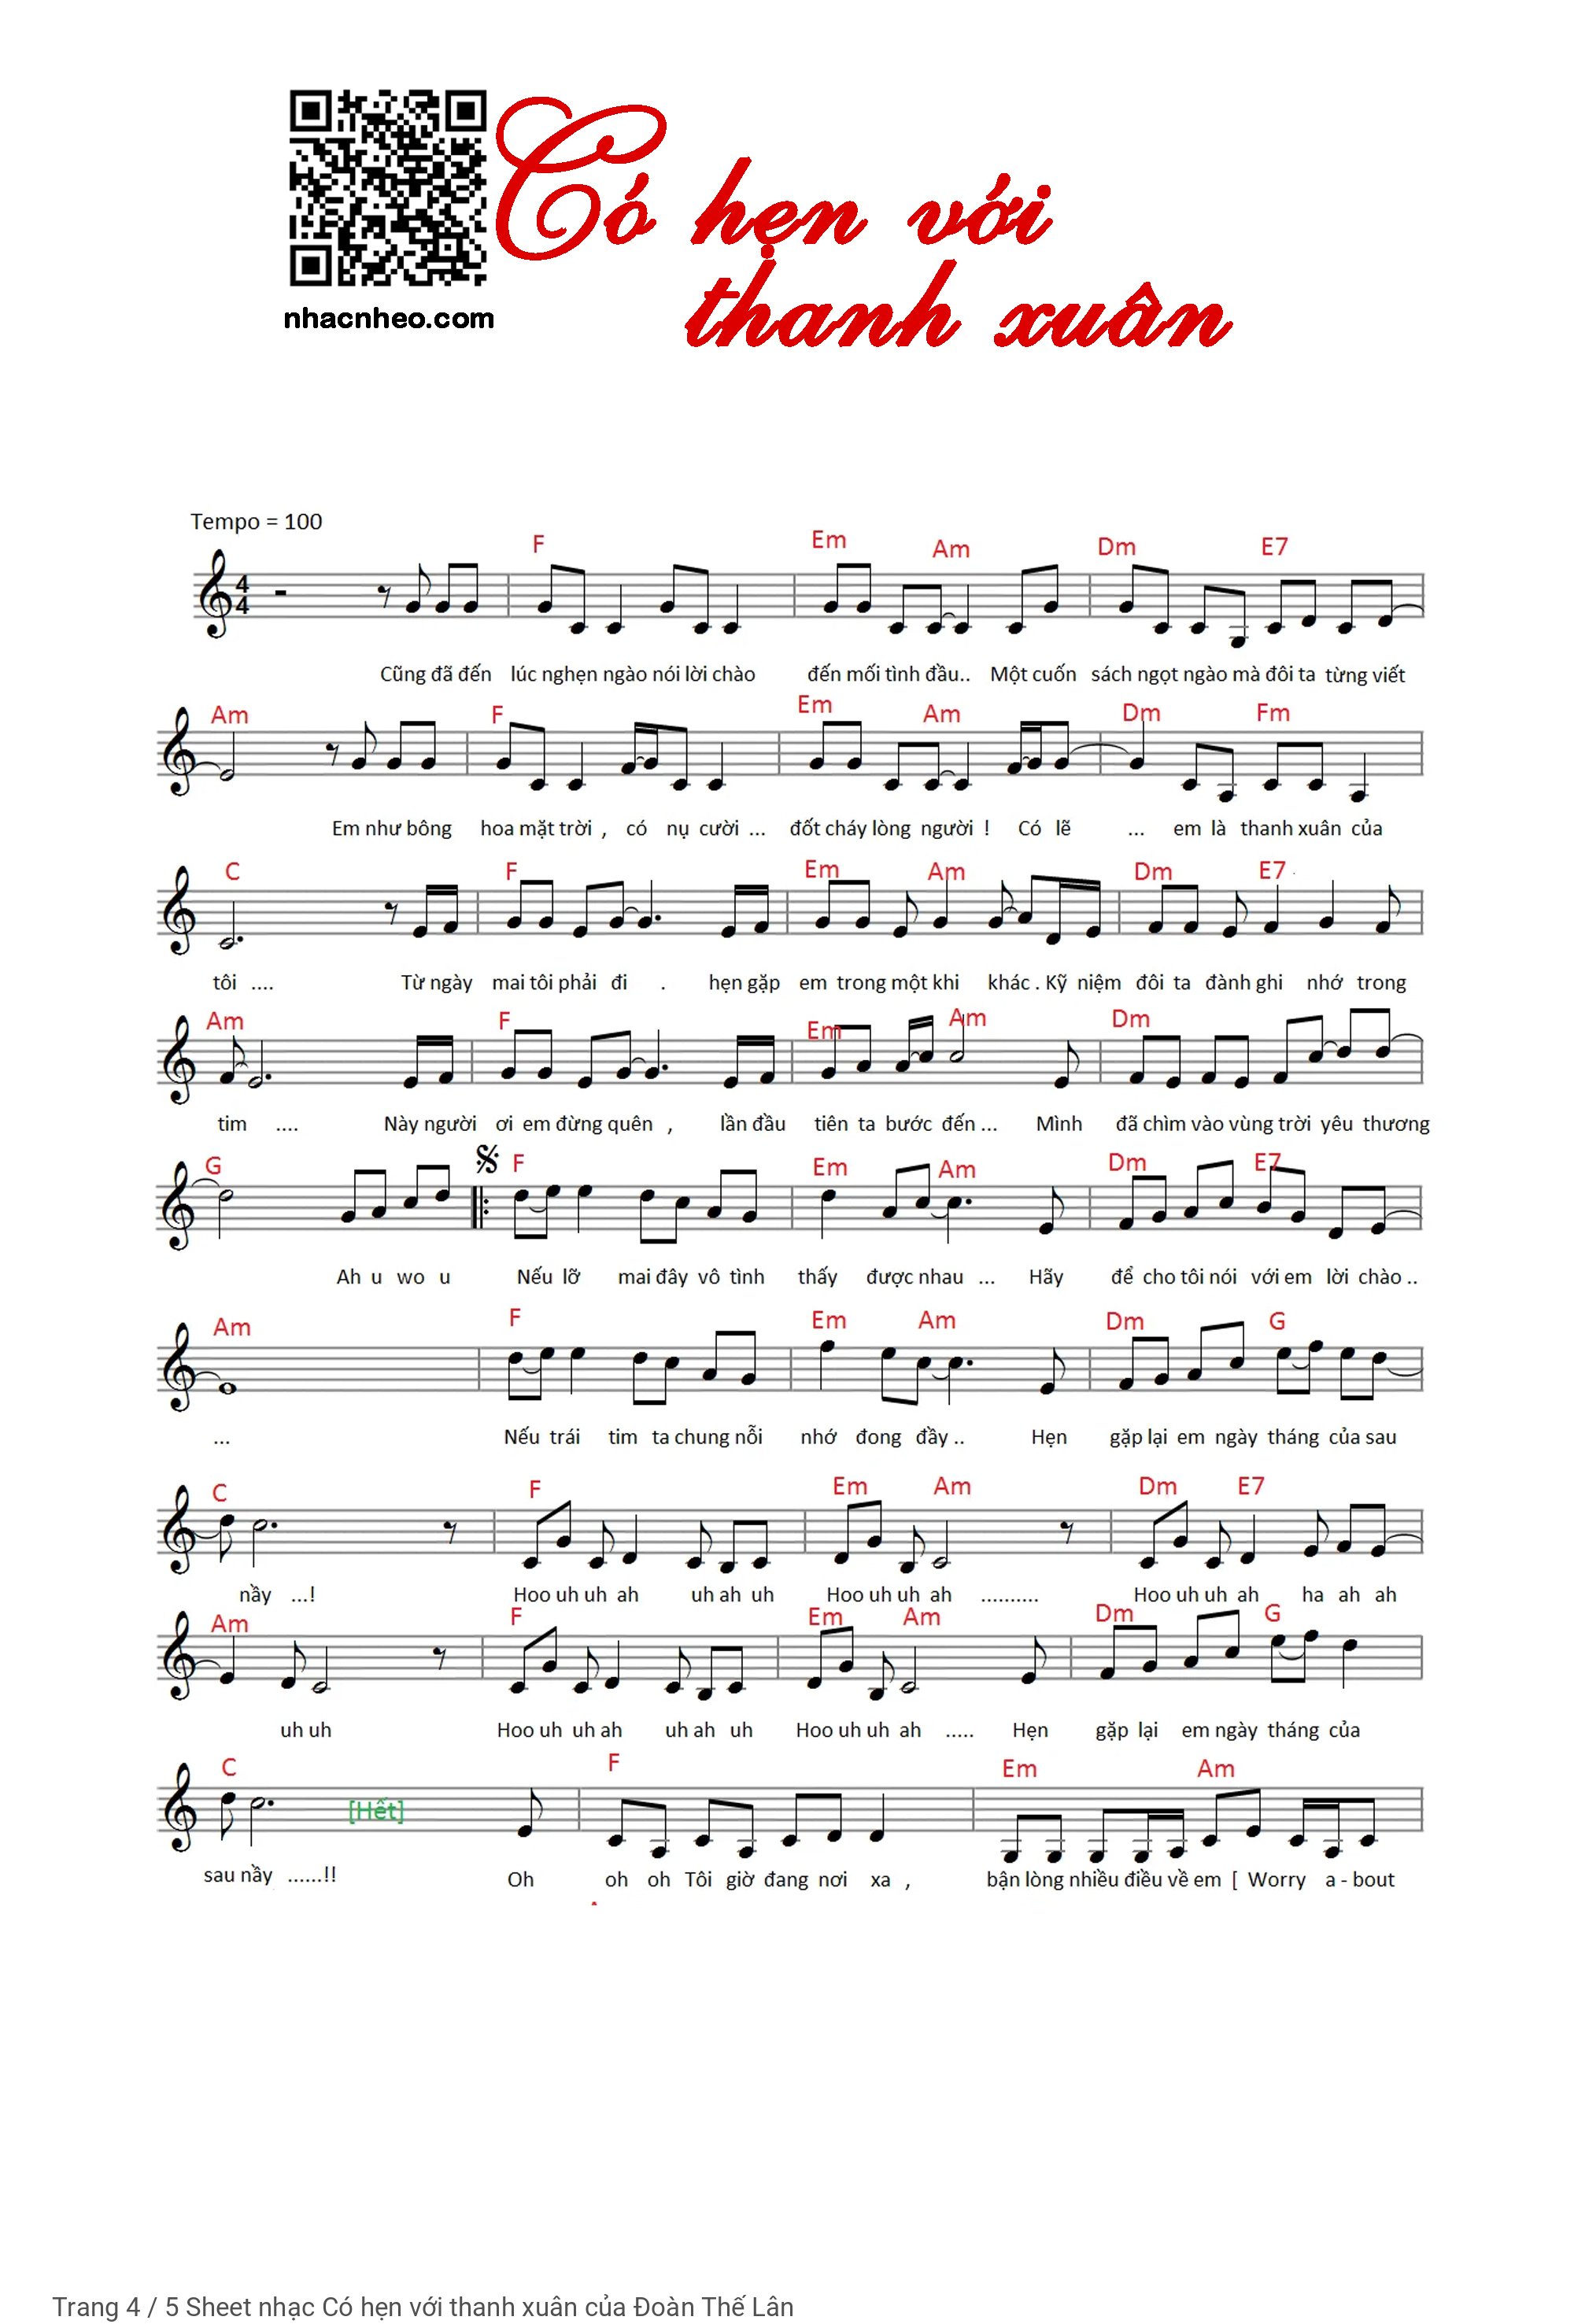 Trang 4 của Sheet nhạc PDF Piano bài hát Có hẹn với thanh xuân - Đoàn Thế Lân